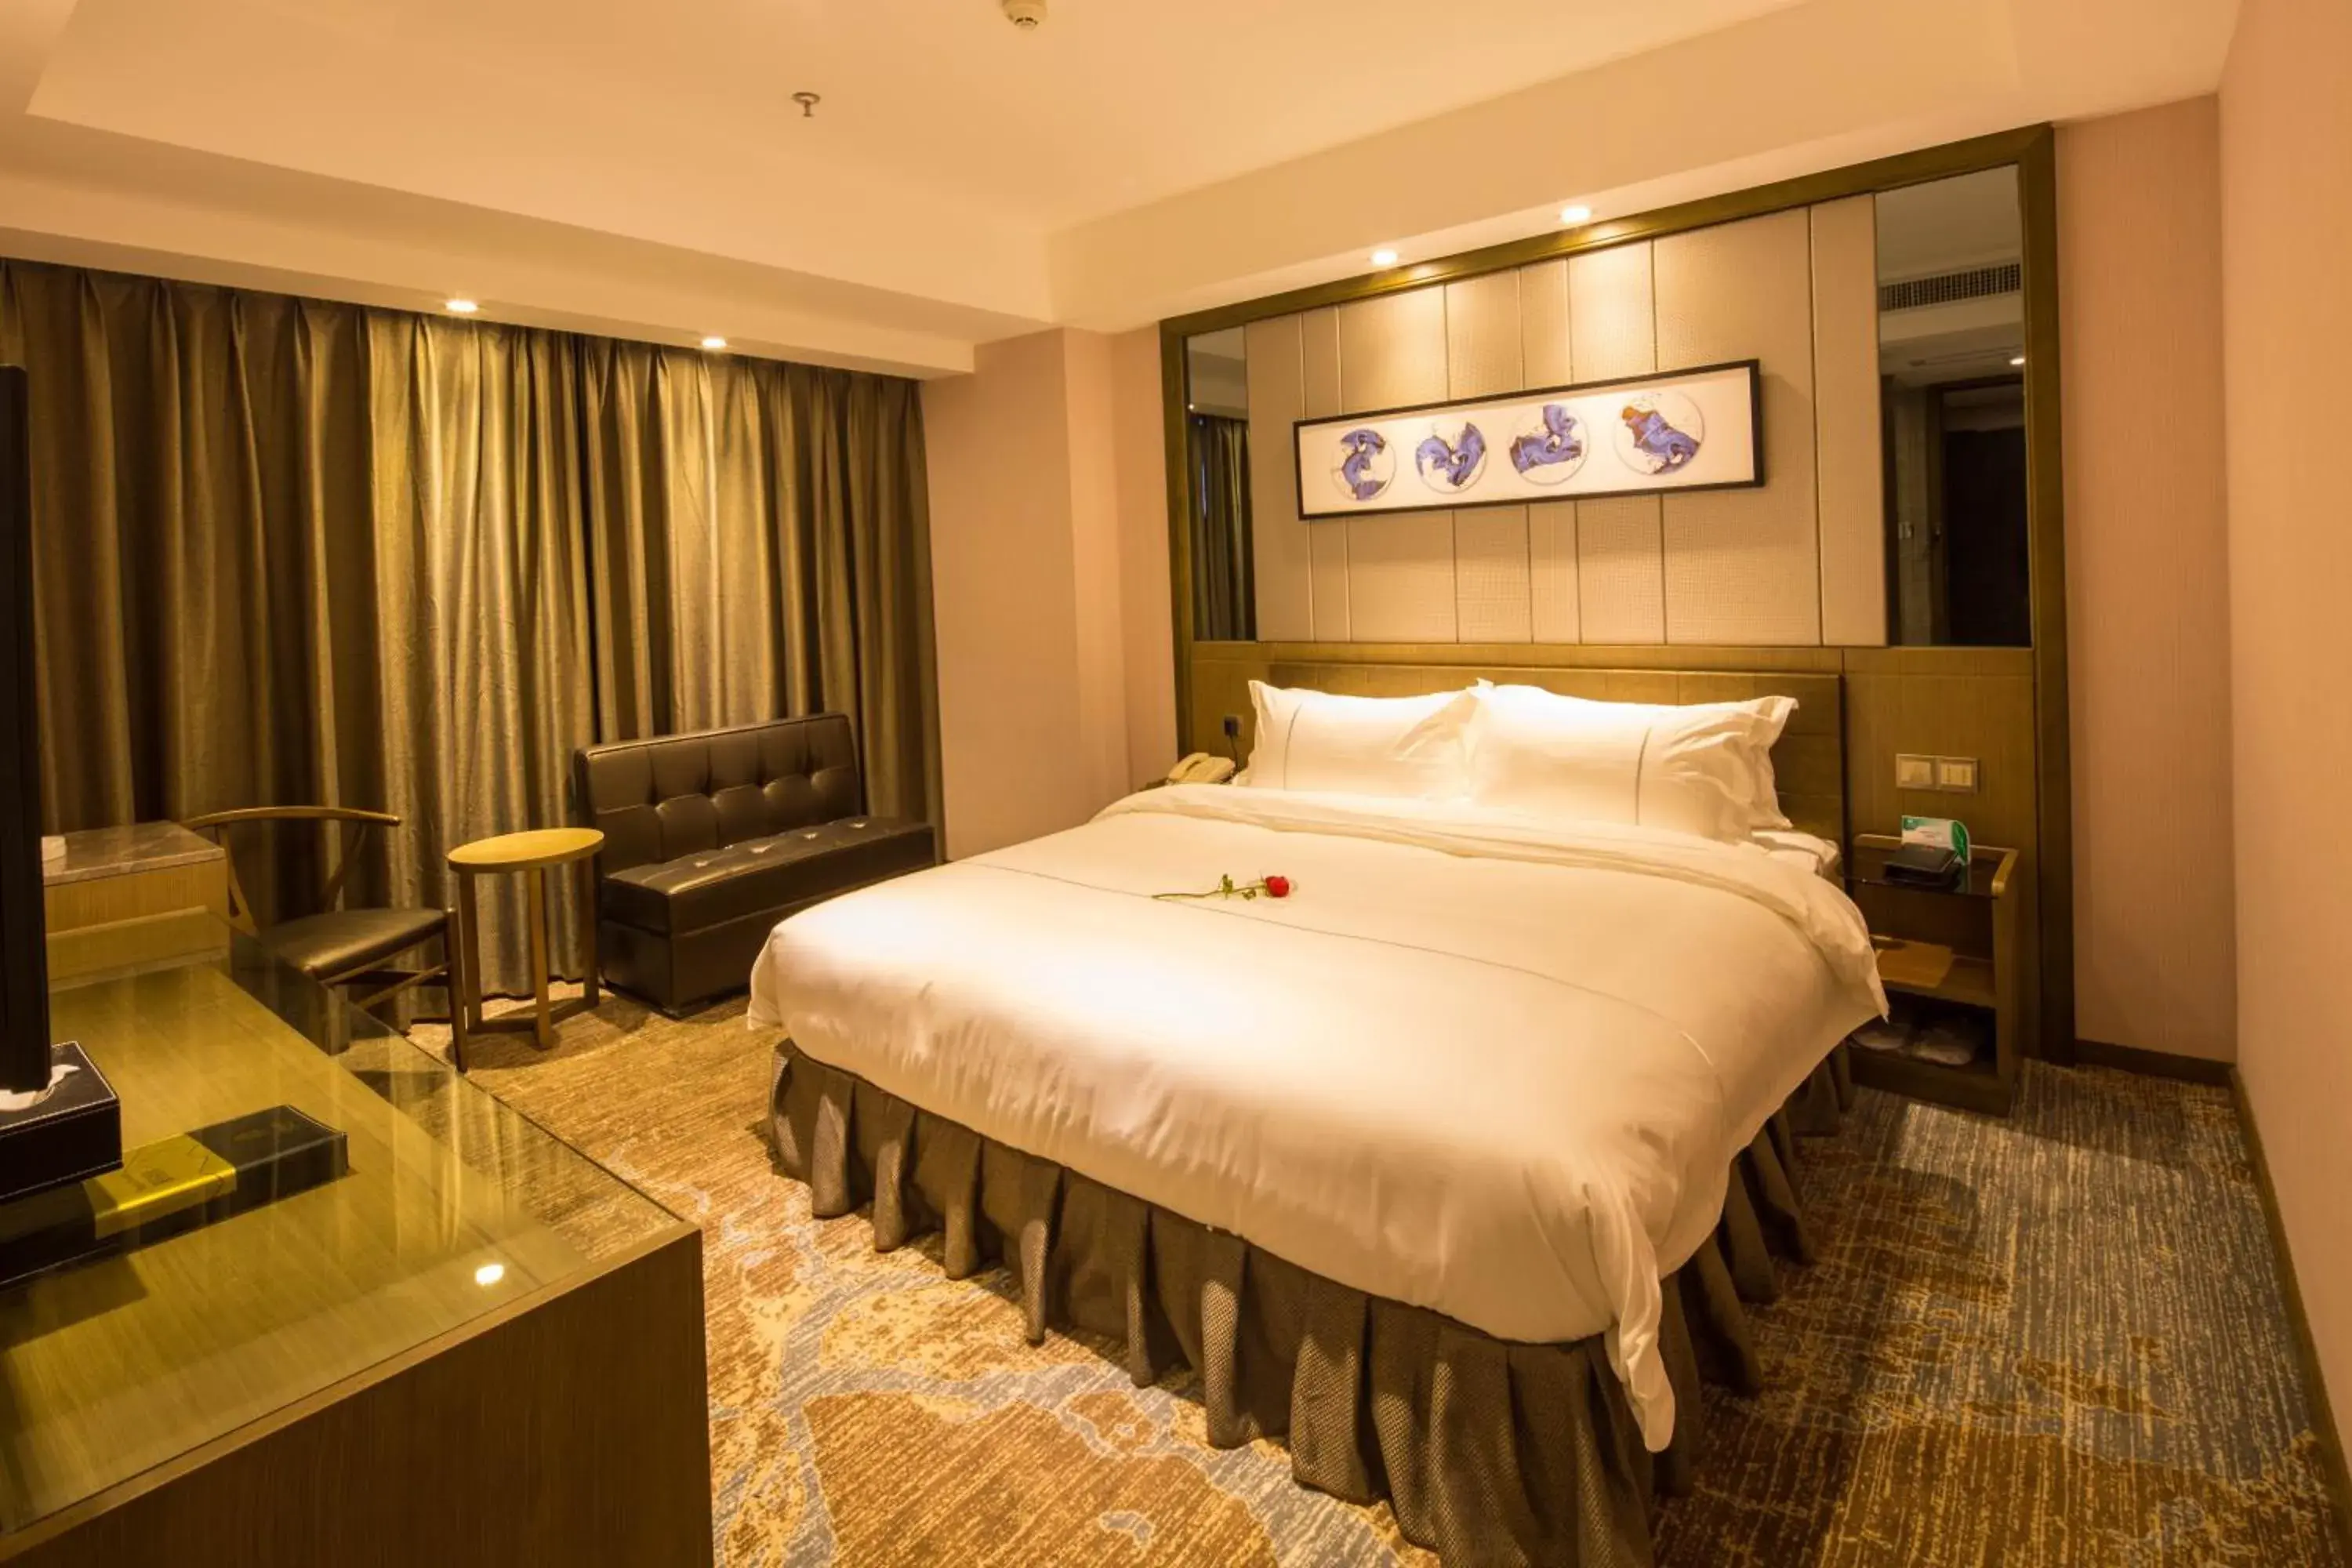 bunk bed, Room Photo in INSAIL Hotel (Shenzhen Dongmen Branch)